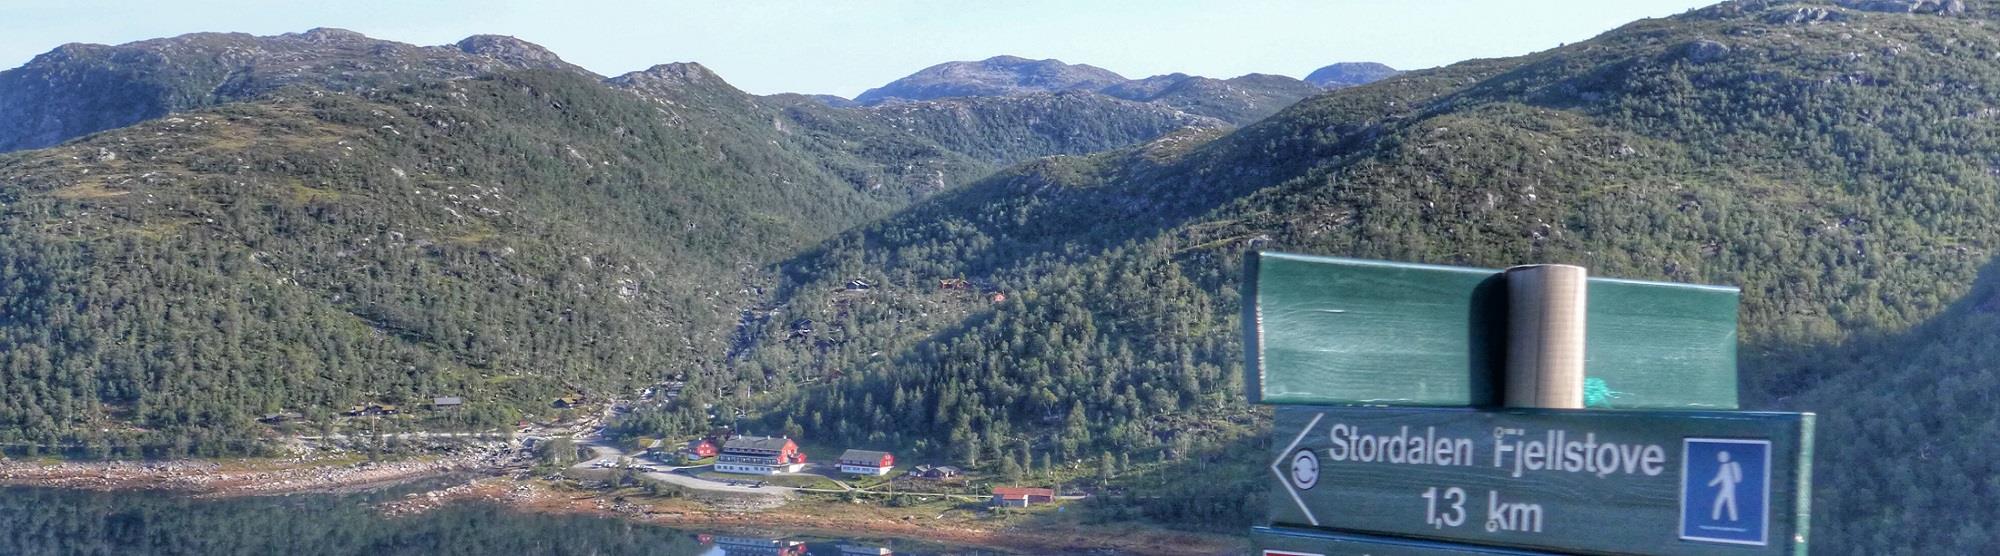 Des Fjord Abseits der Touristenpfade